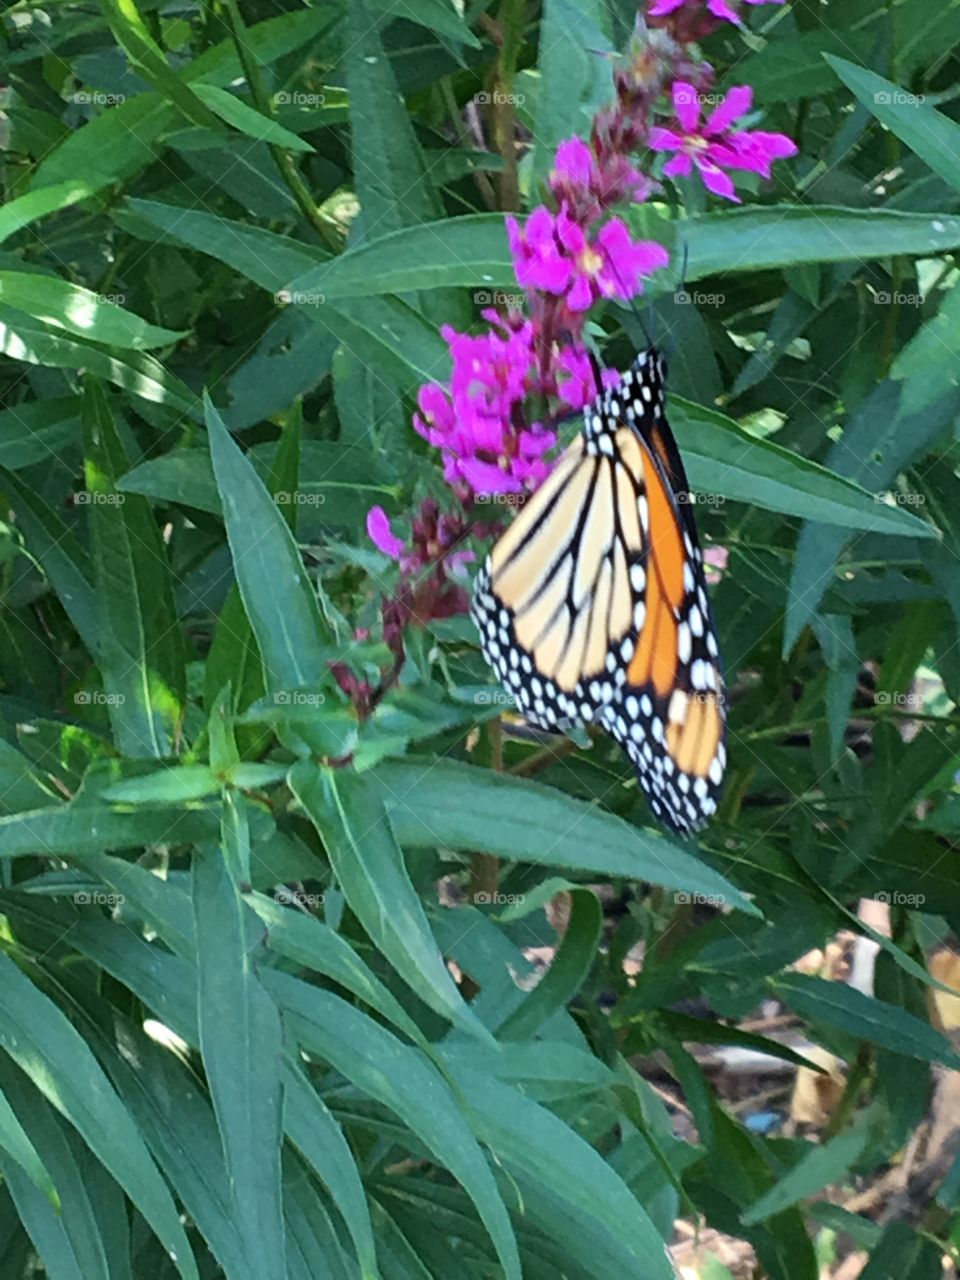 Monarch butterfly on purple flower